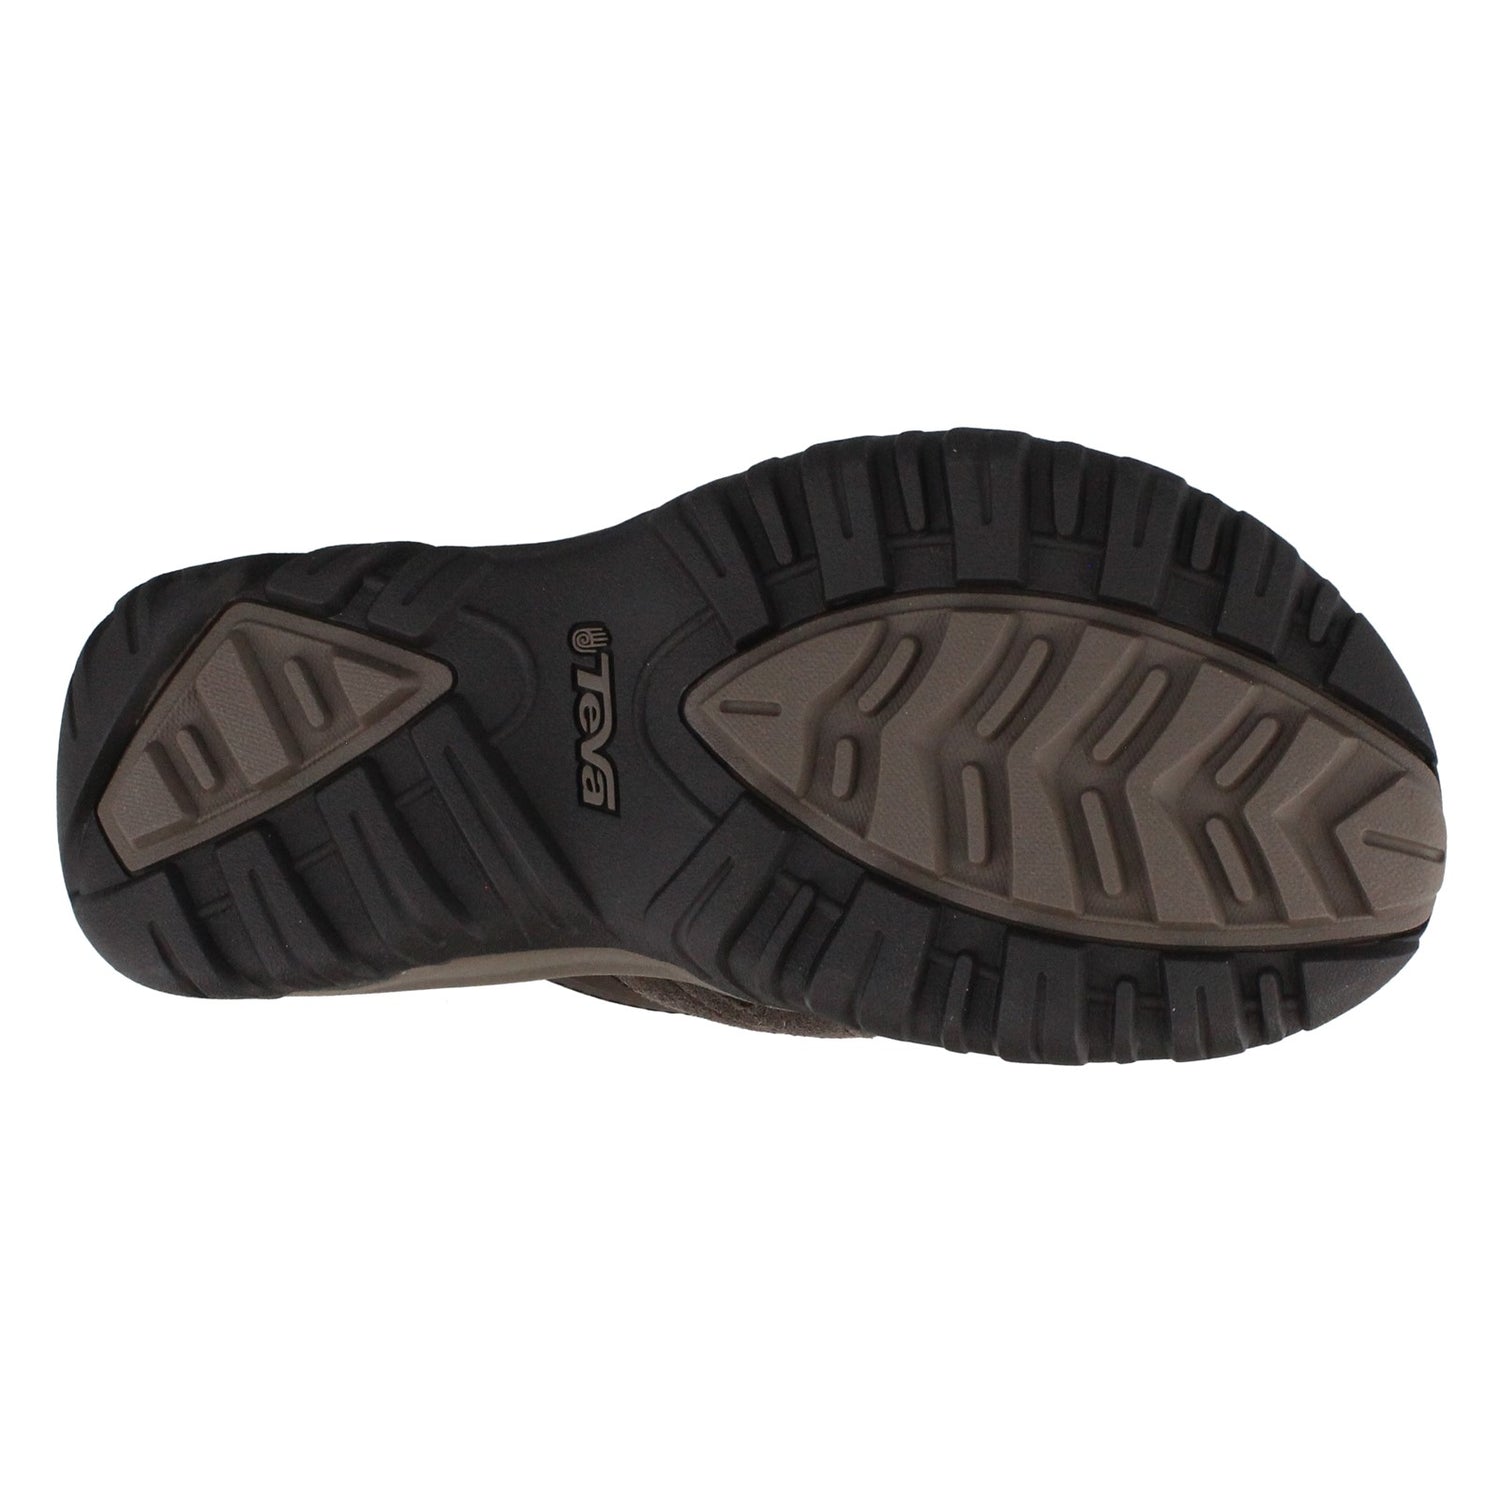 Peltz Shoes  Men's Teva Pajaro Sandal Thong Sandal TURKISH COFFEE 1002432-TKCF